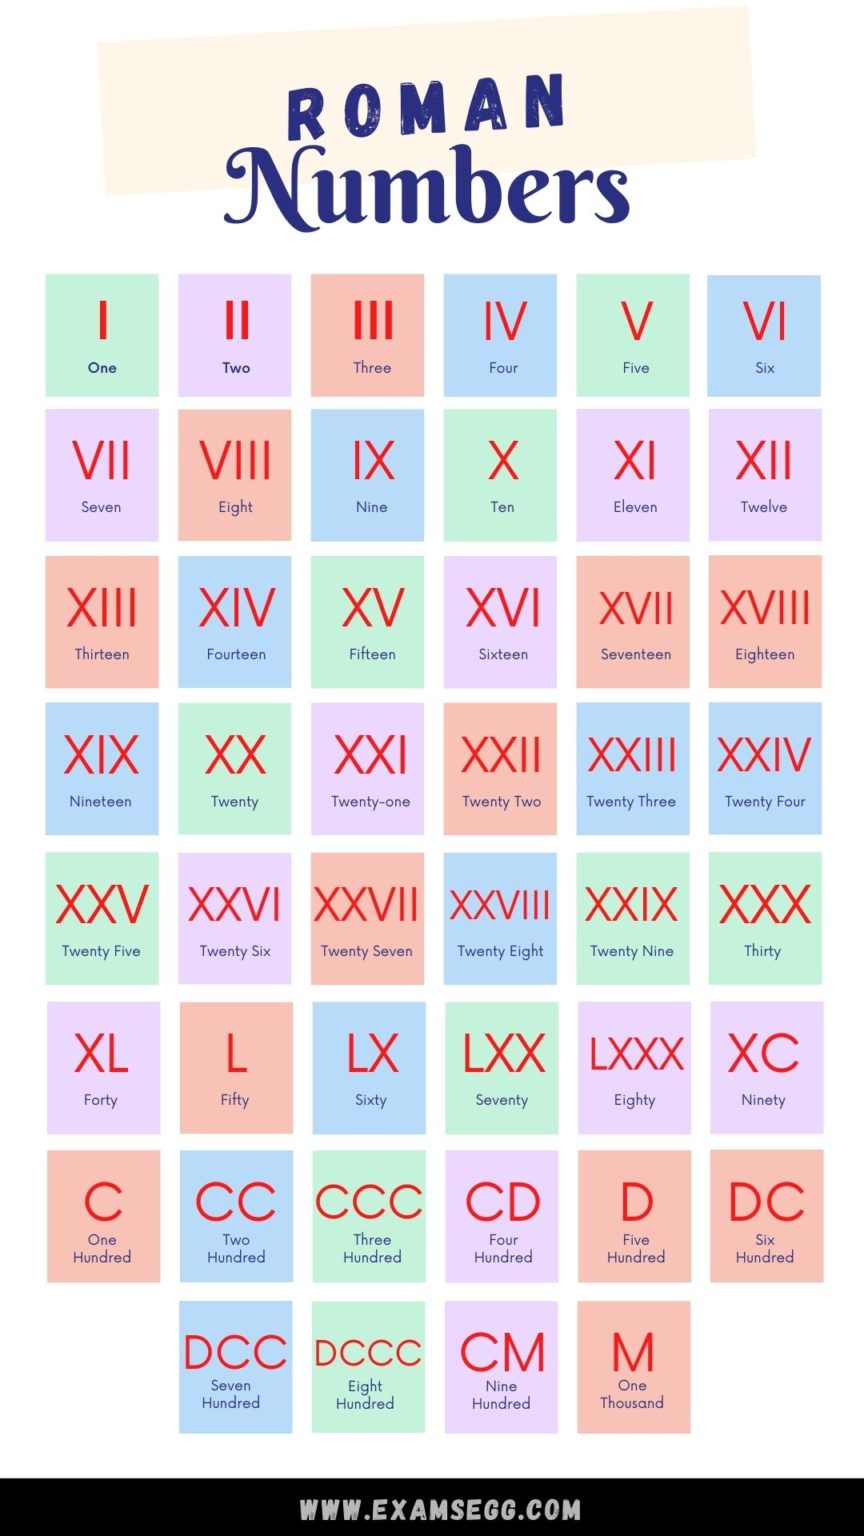 roman-numerals-list-chart